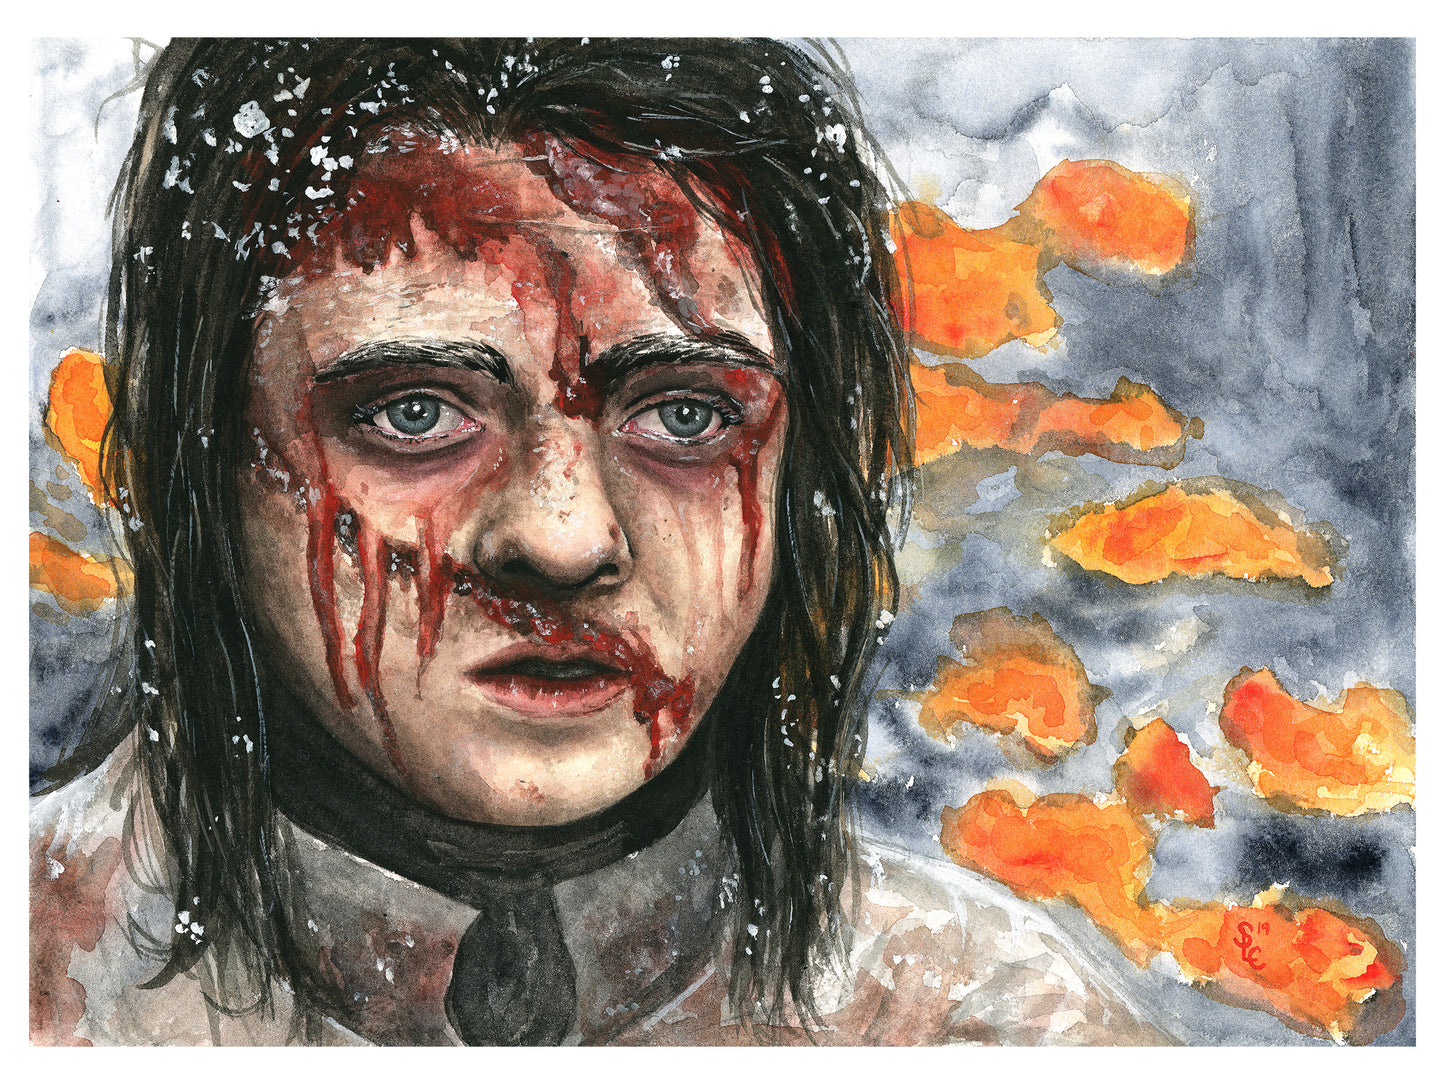 Game of Thrones: Arya Stark Painting